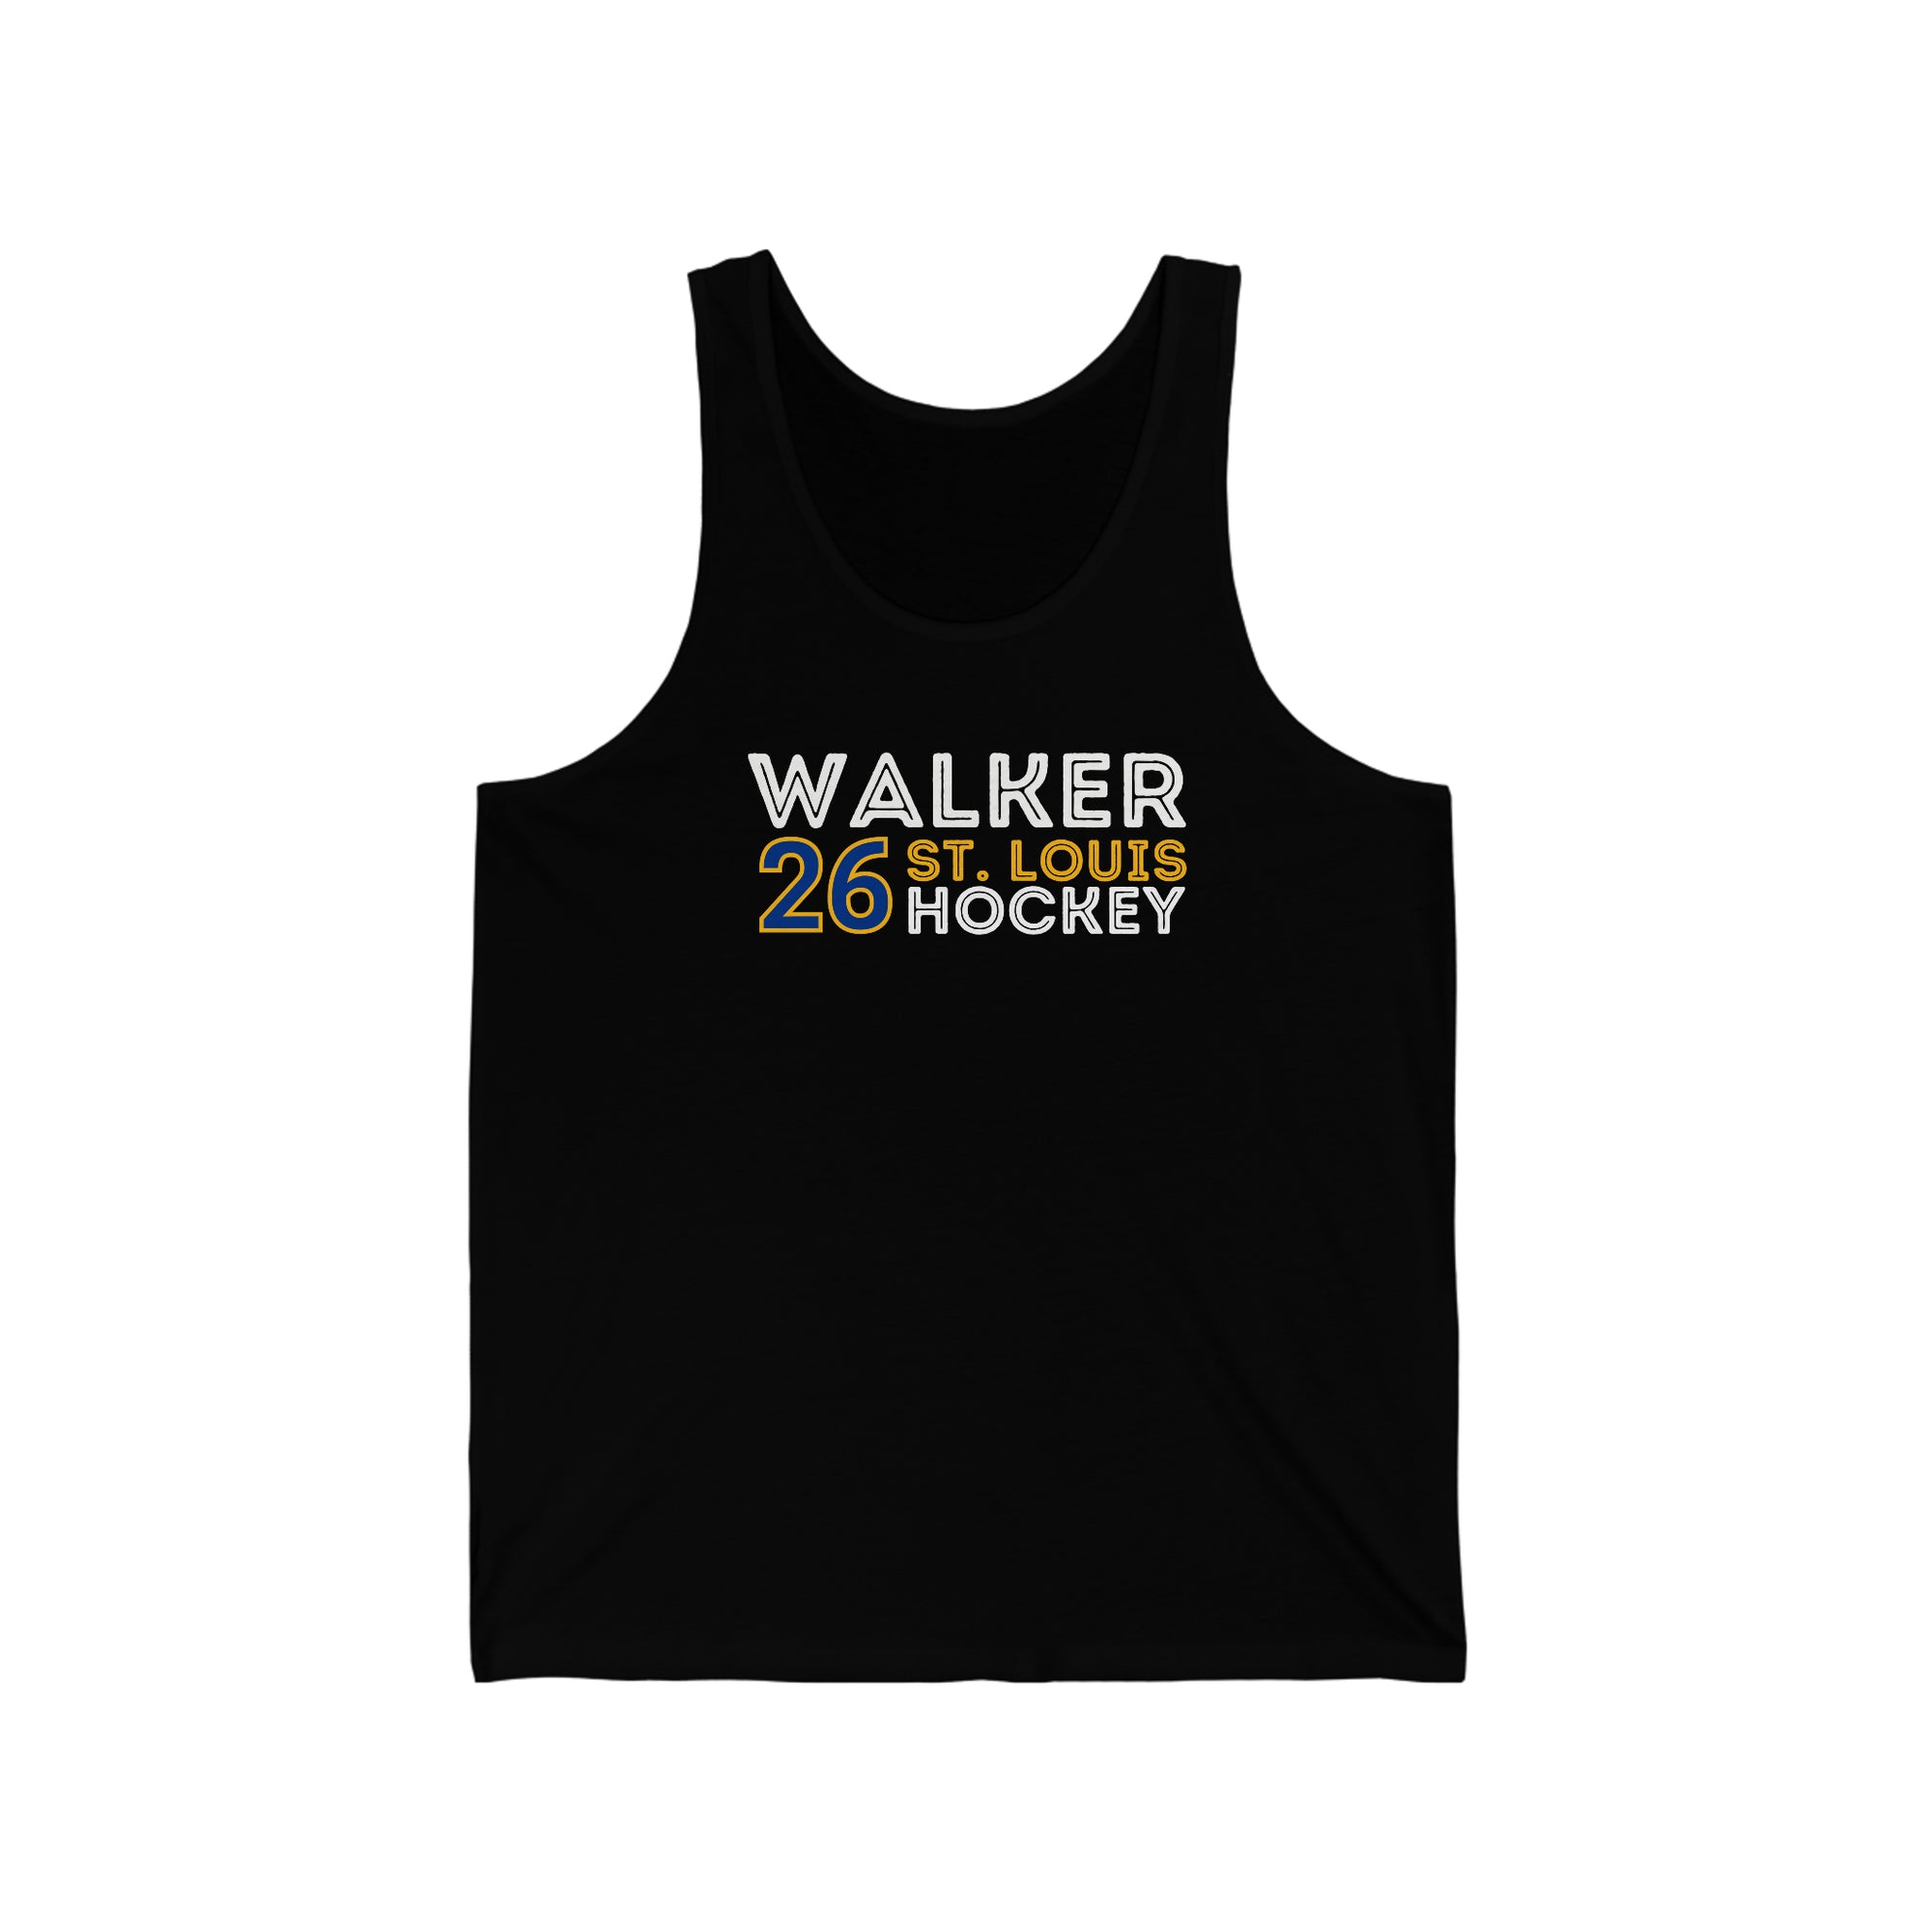 Walker 26 St. Louis Hockey Grafitti Wall Design Unisex Jersey Tank Top